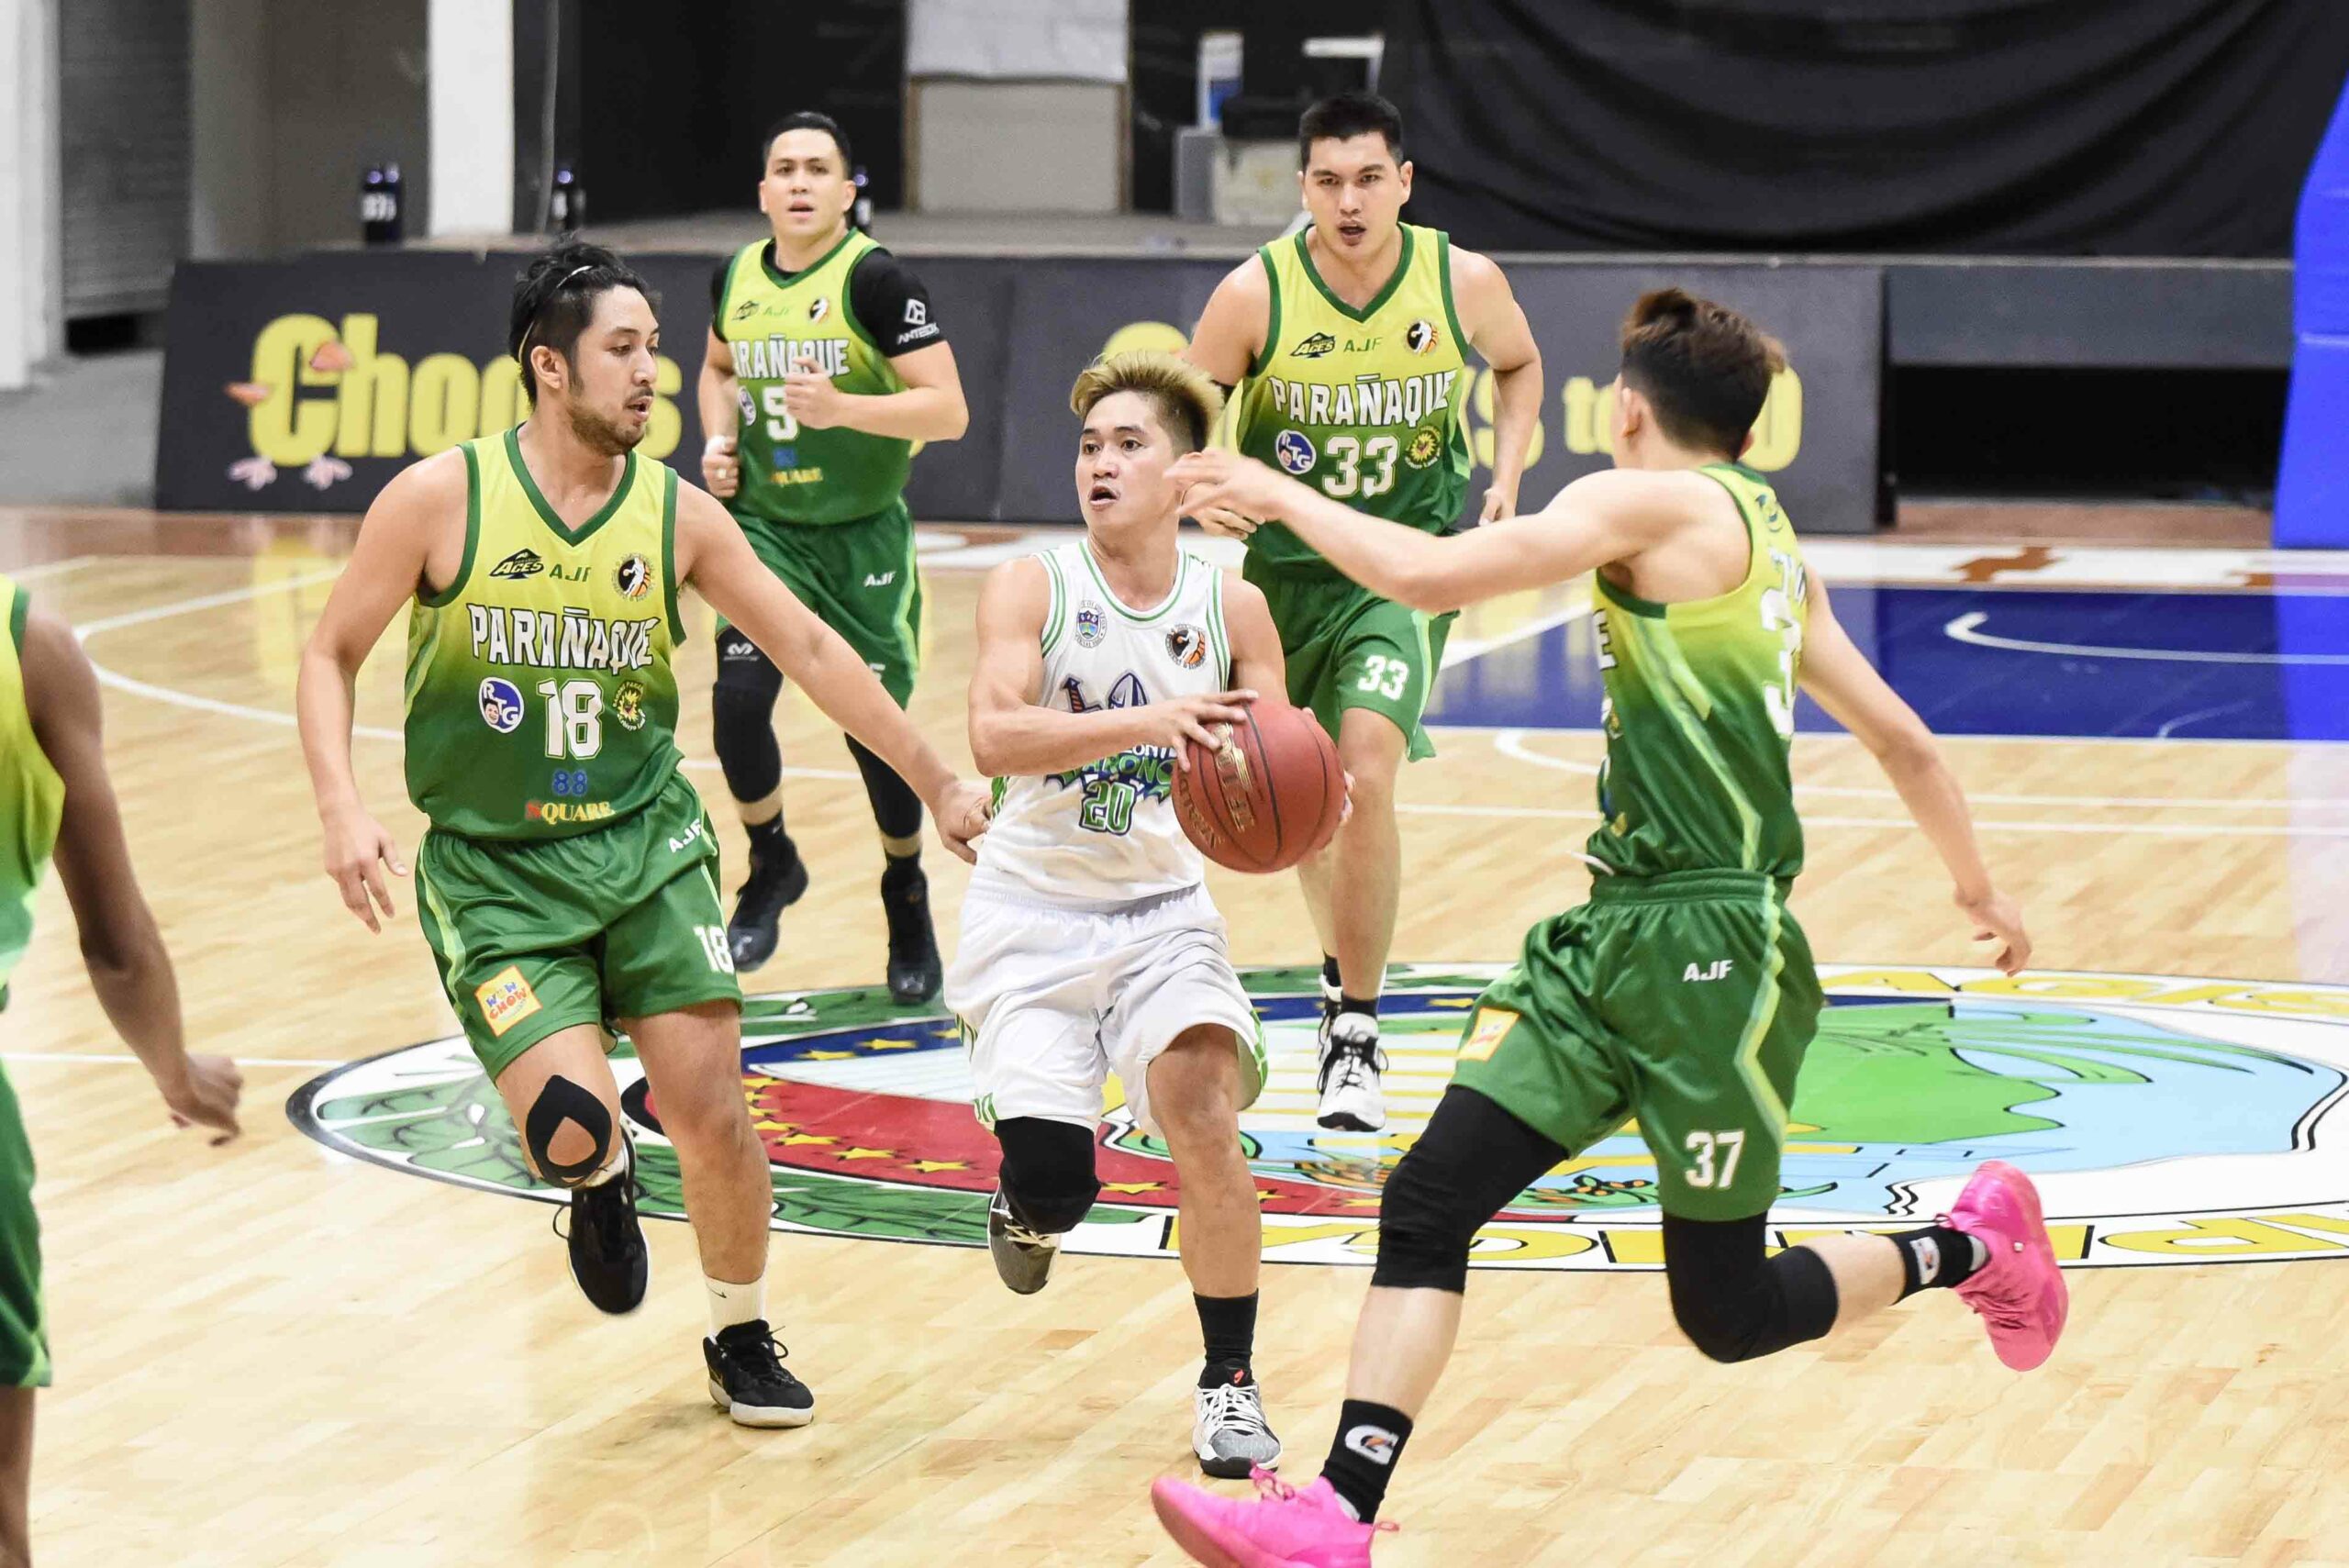 2021-Chooks-to-Go-NBL-Quezon-vs-Paranaque-Christopher-Lagrama-Quezon-scaled Vince Alves the hero as Parañaque sinks Quezon, keeps NBL playoff dreams alive Basketball NBL News  - philippine sports news